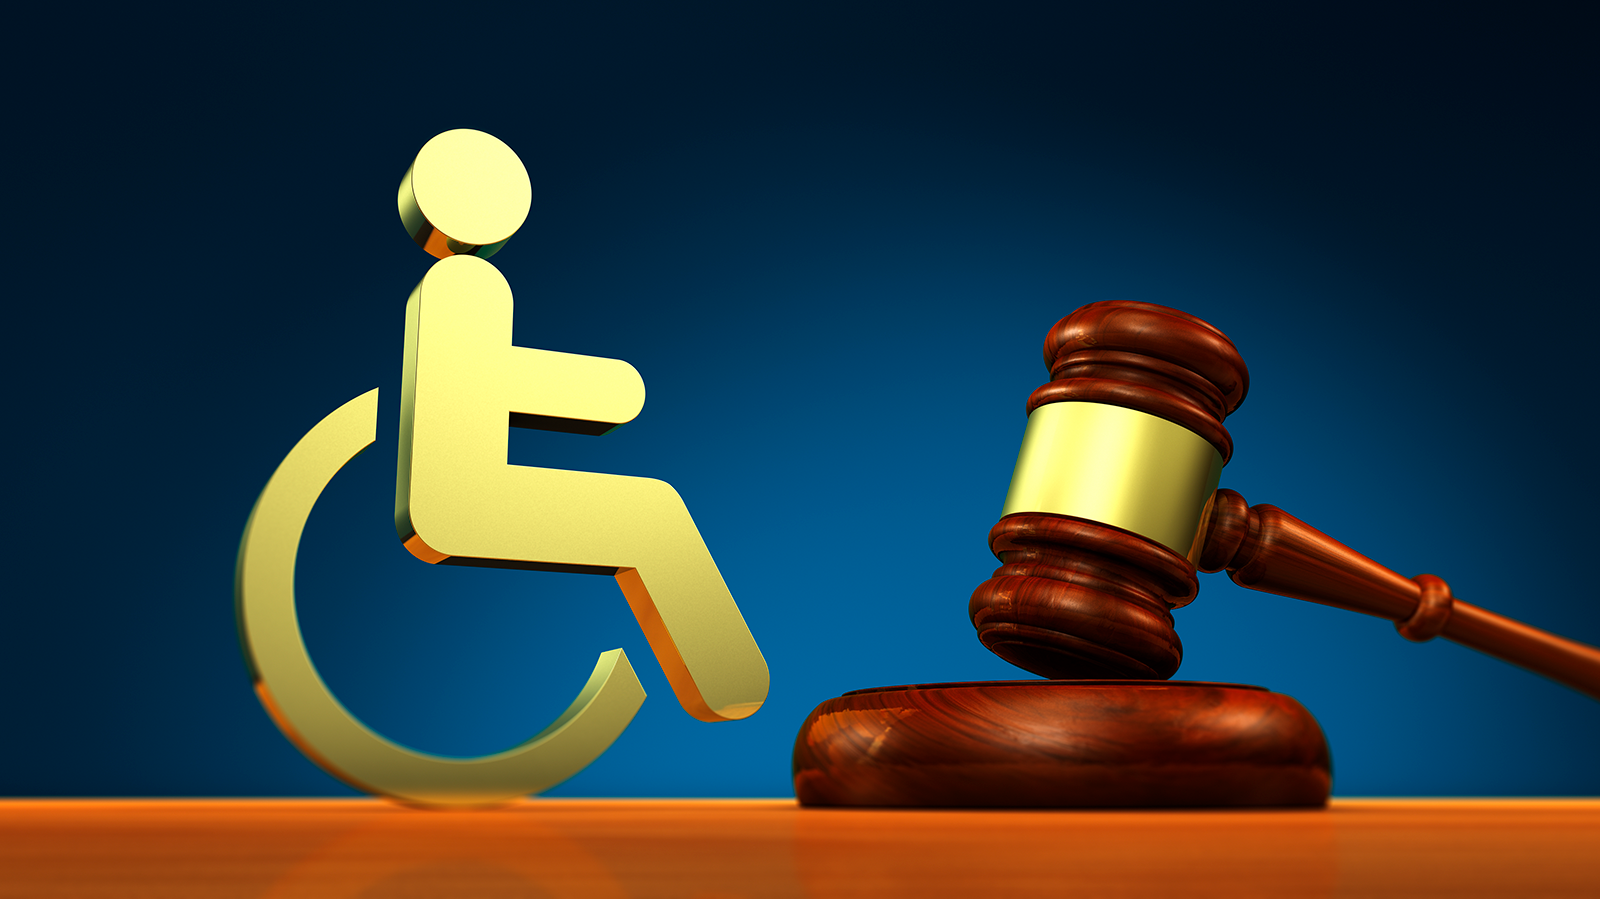 Grafiikka: tuomarin nuija ja vieressä hahmo pyörätuolissa.